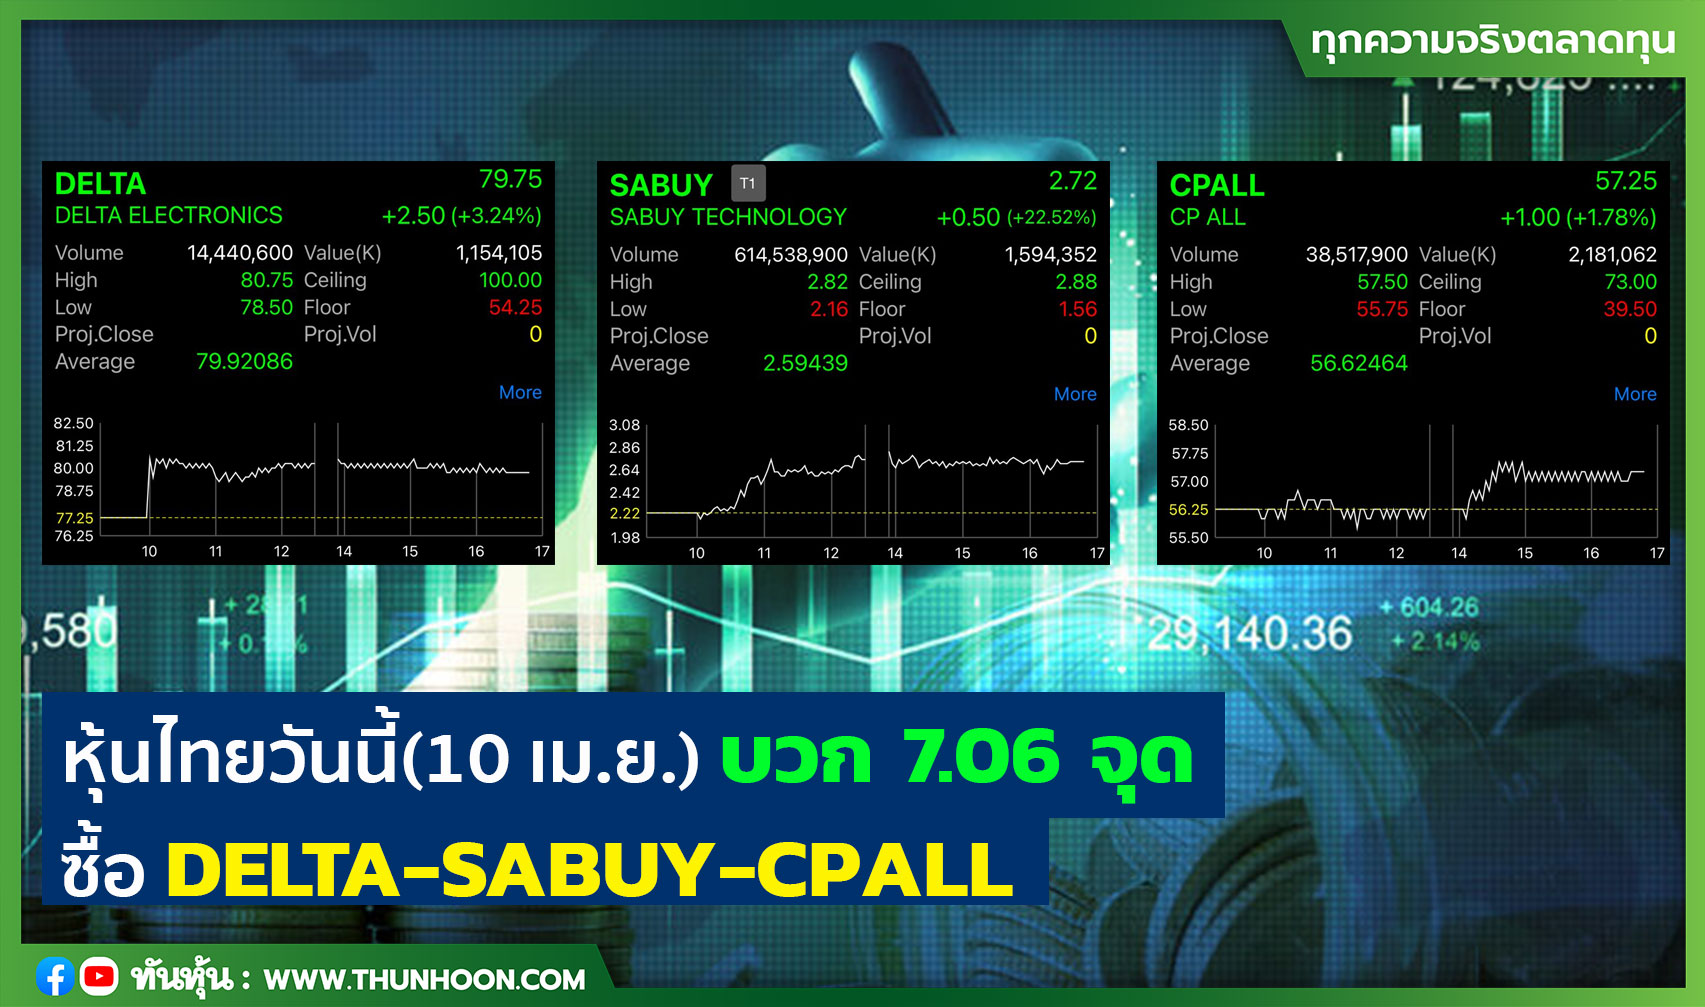 หุ้นไทยวันนี้(10 เม.ย.)  บวก 7.06 จุด ซื้อ DELTA-SABUY-CPALL 